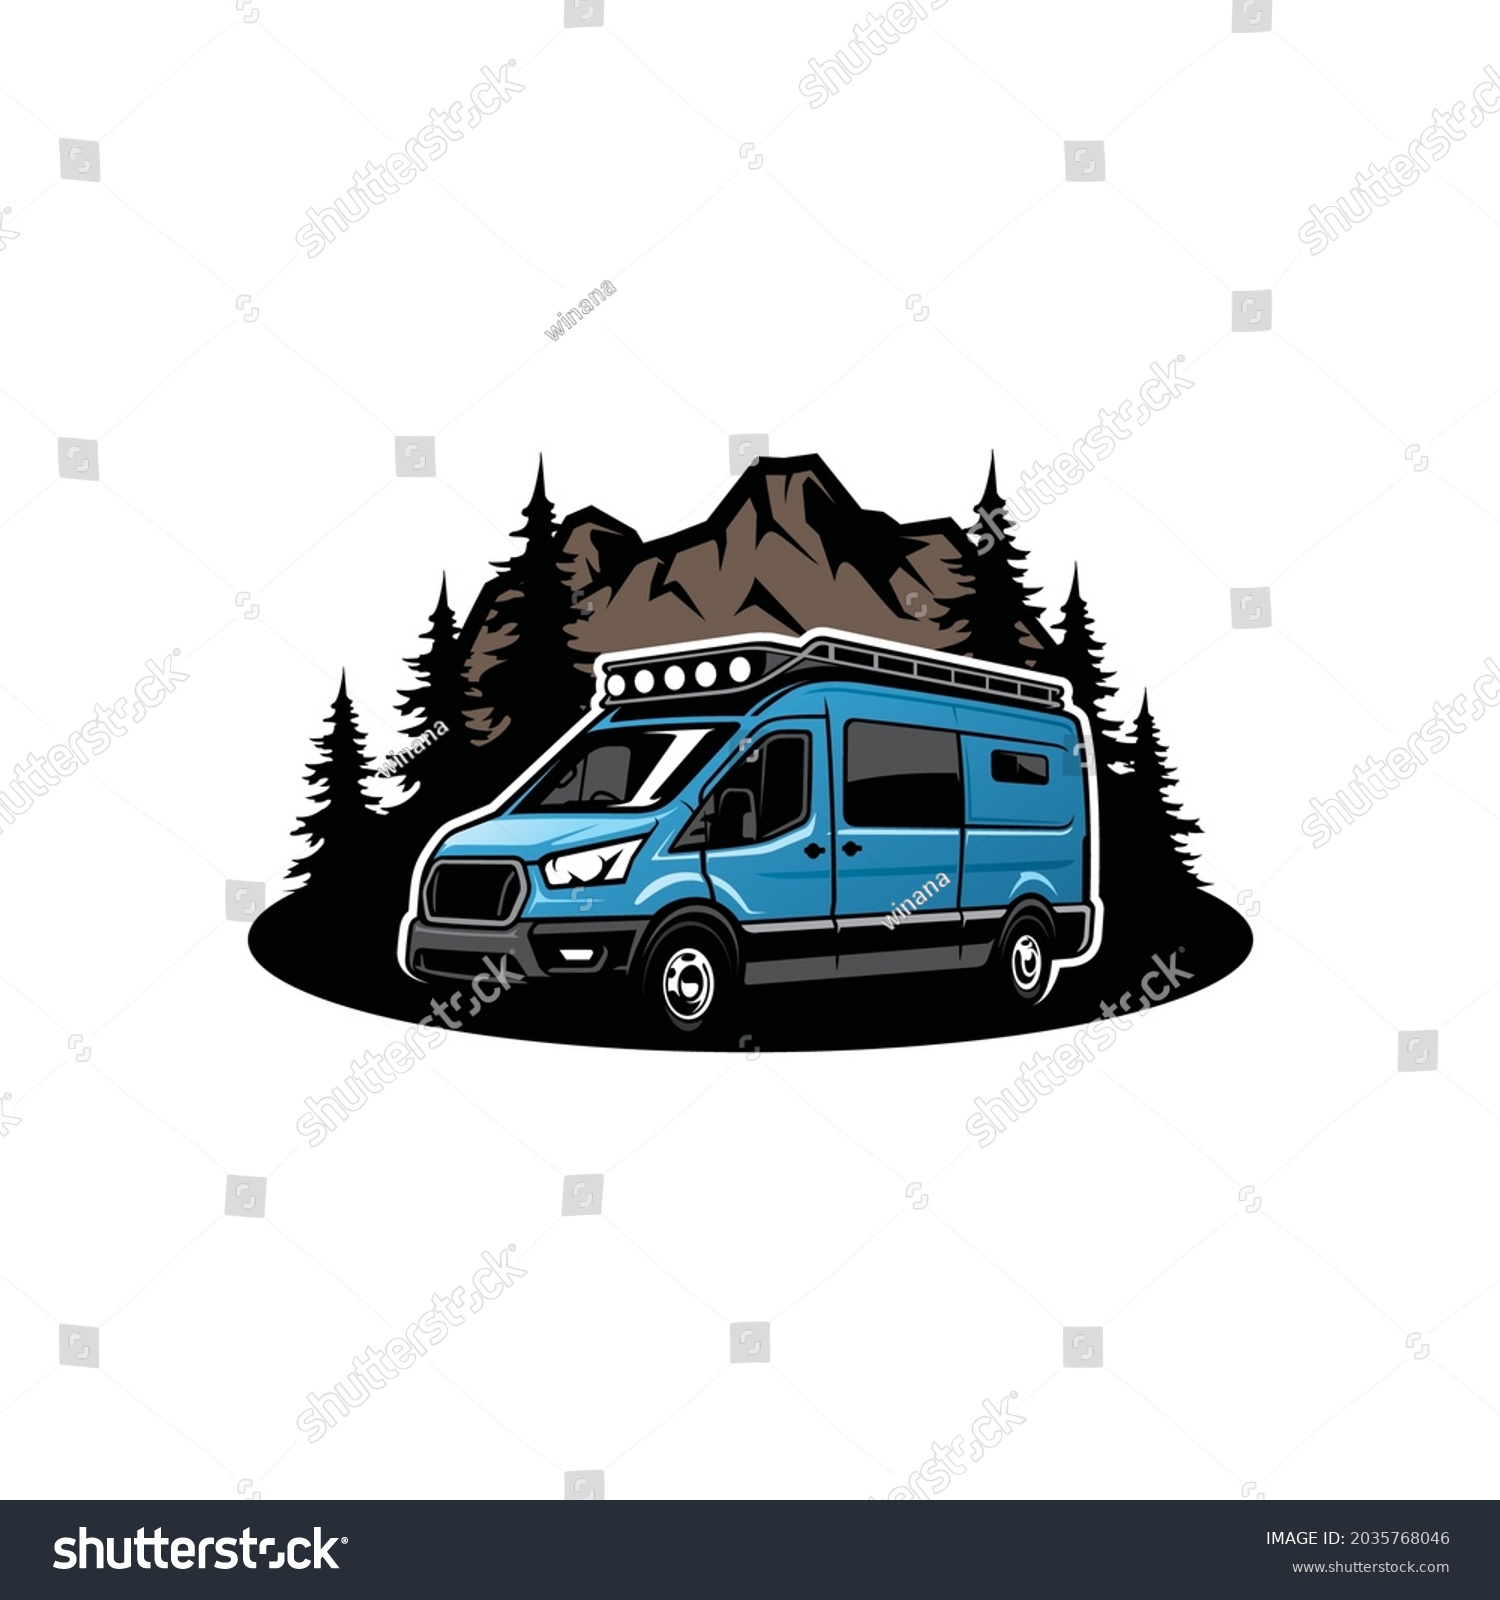 Camper van logo Images, Stock Photos & Vectors | Shutterstock